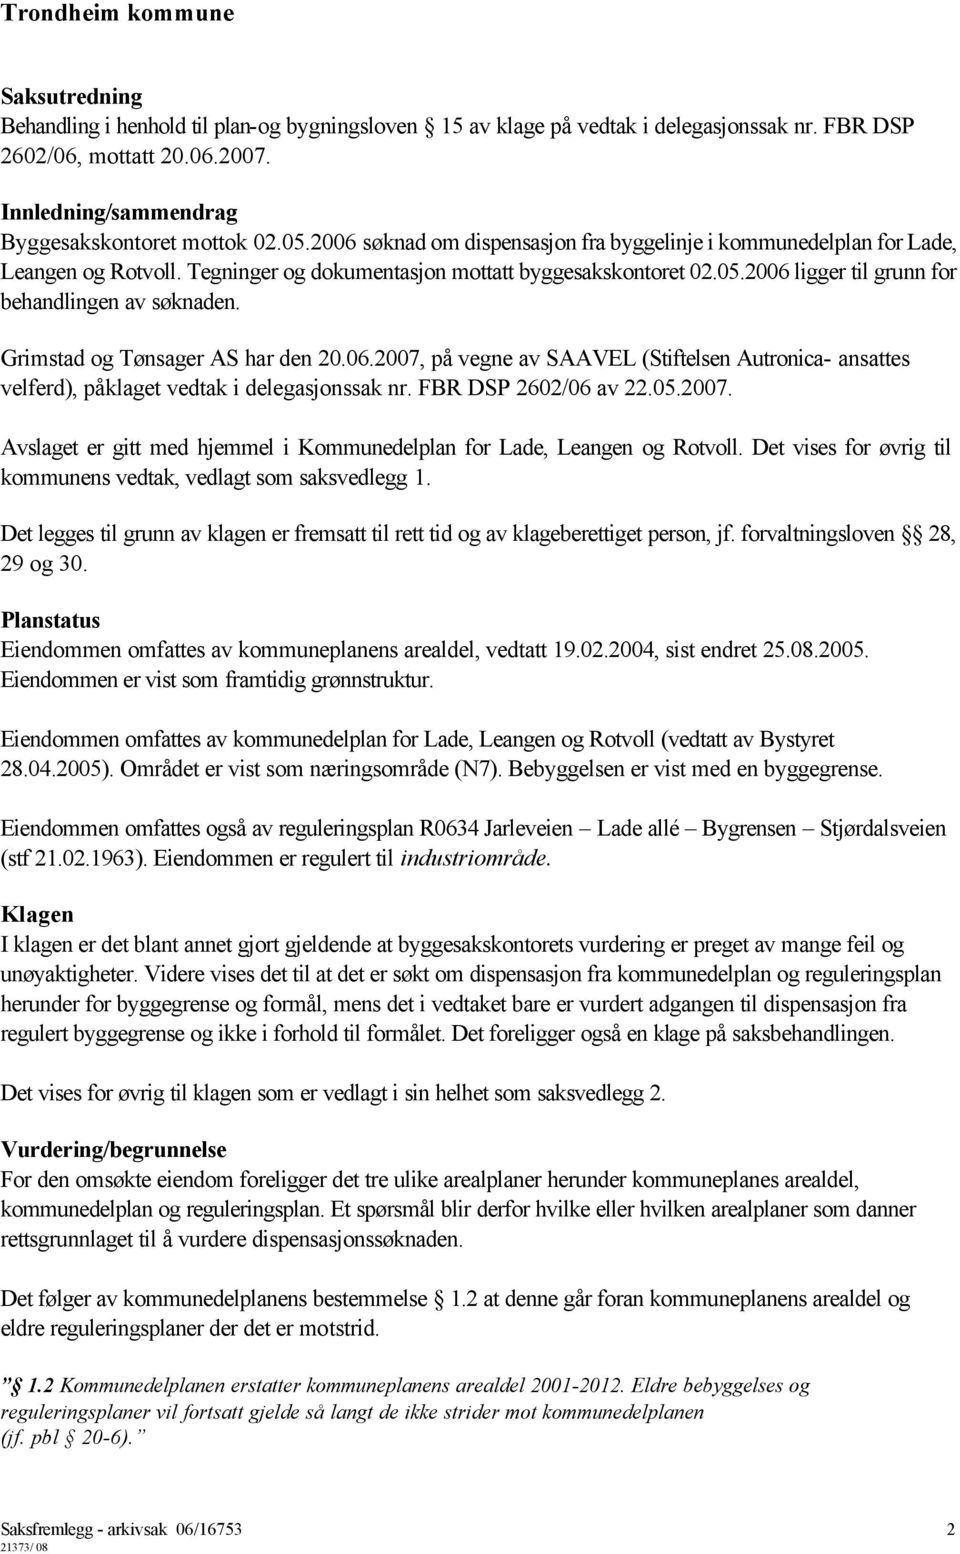 Grimstad og Tønsager AS har den 20.06.2007, på vegne av SAAVEL (Stiftelsen Autronica- ansattes velferd), påklaget vedtak i delegasjonssak nr. FBR DSP 2602/06 av 22.05.2007. Avslaget er gitt med hjemmel i Kommunedelplan for Lade, Leangen og Rotvoll.